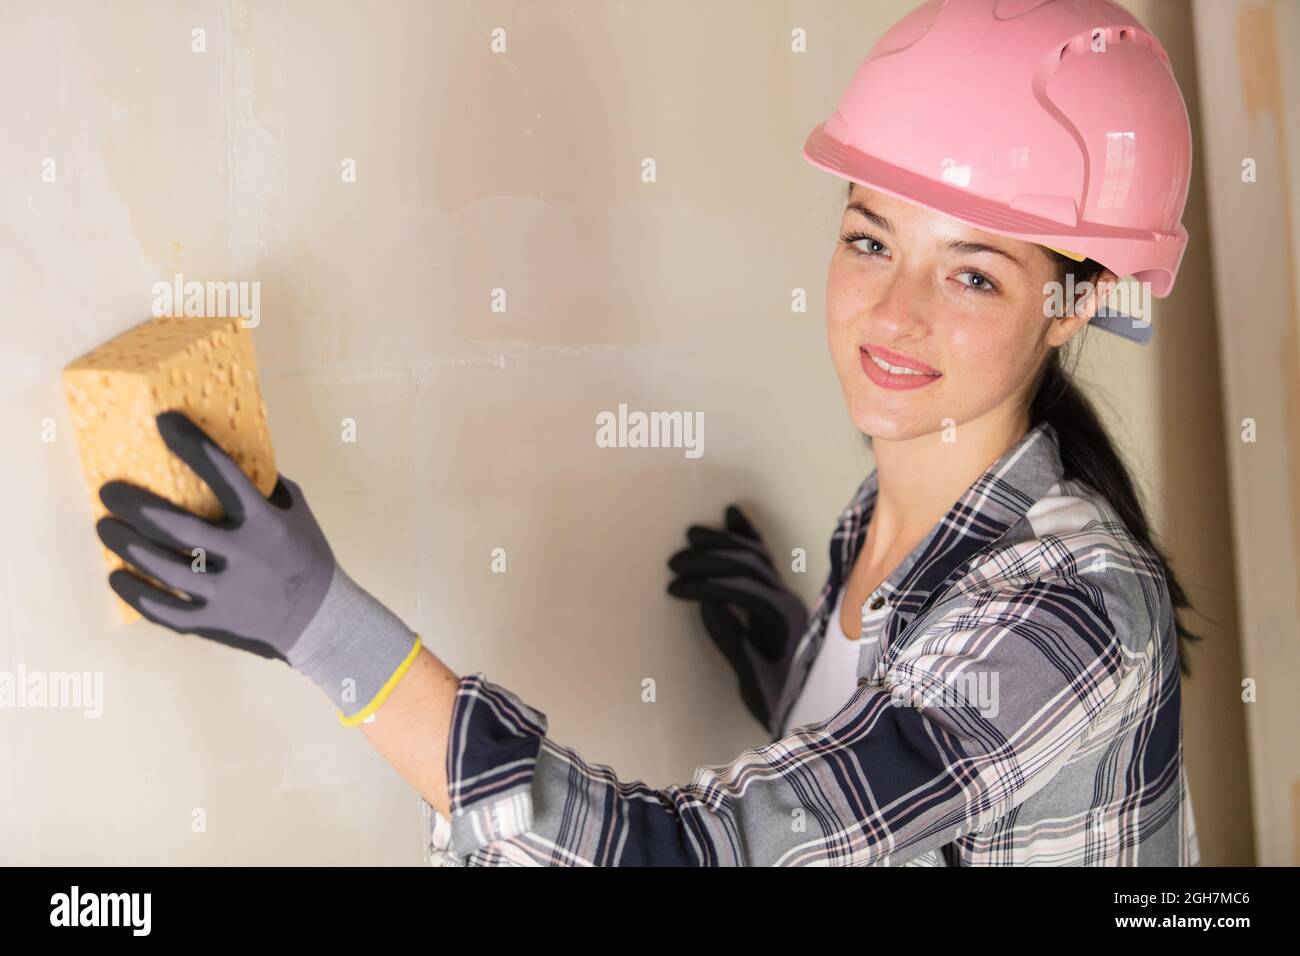 female builder using sponge on wall Stock Photo